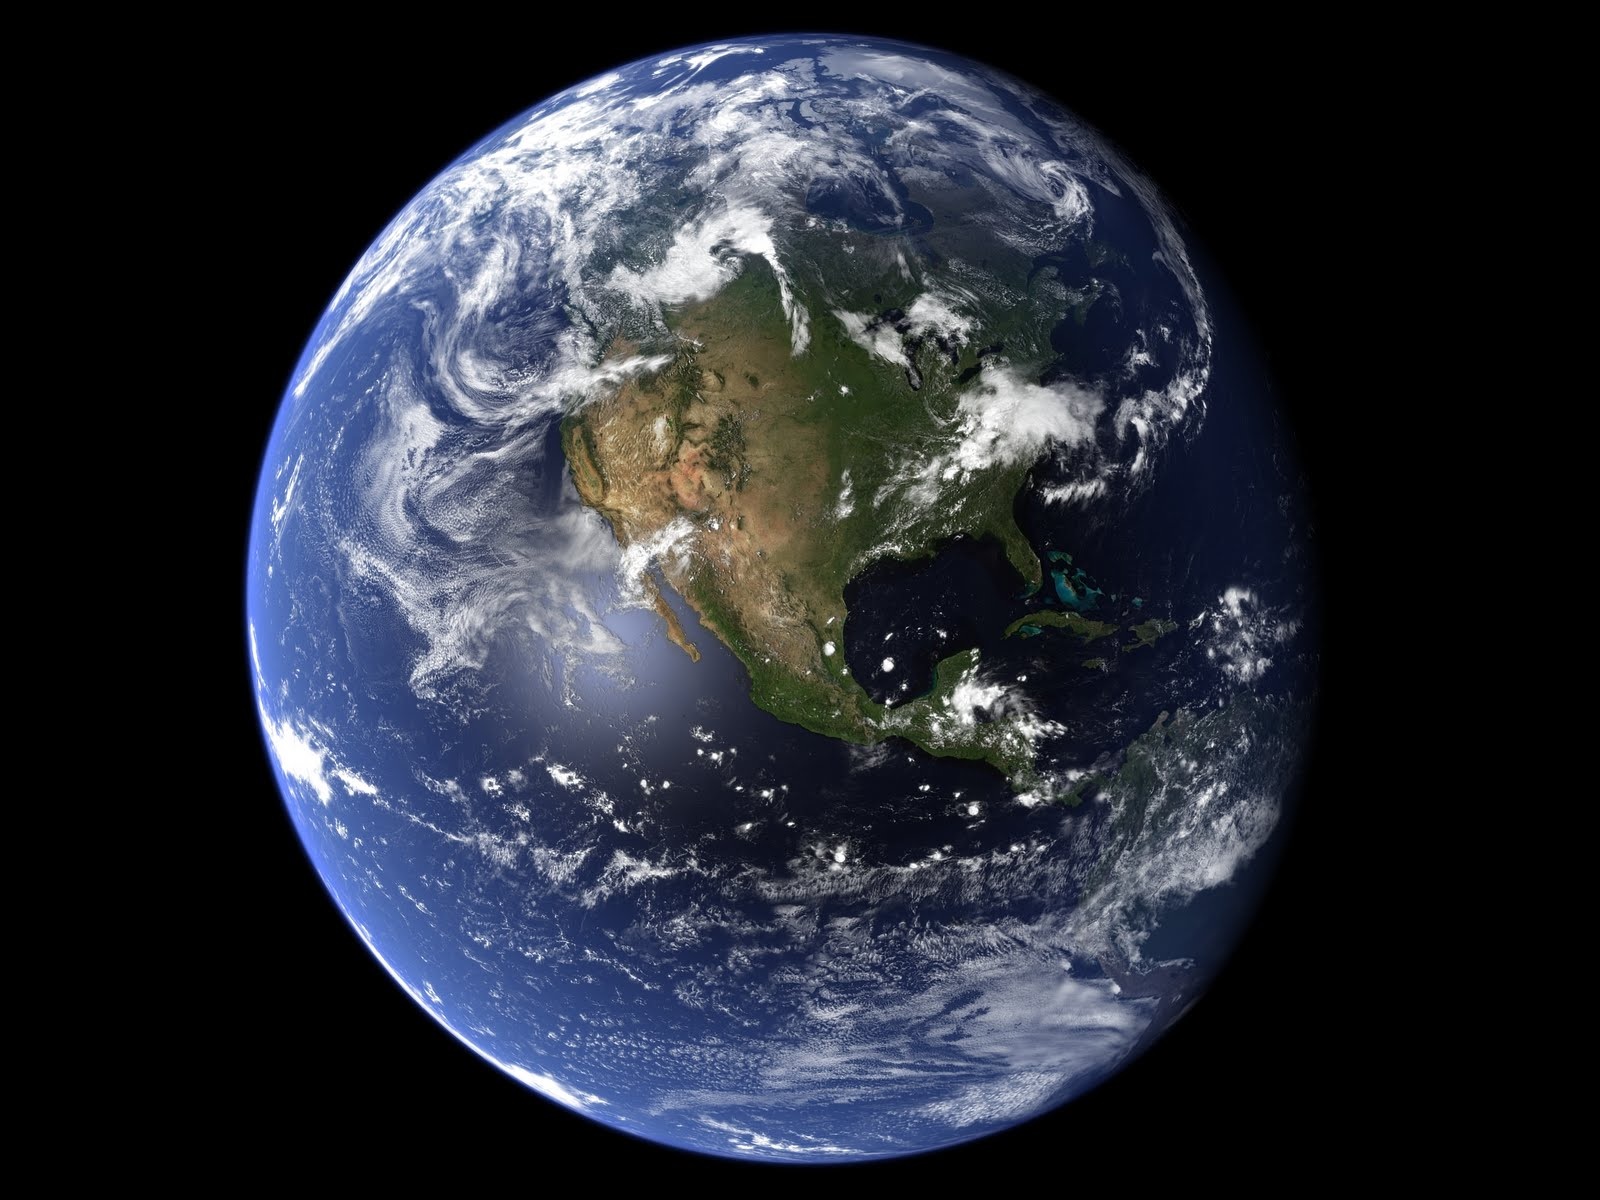 Tấm ảnh Earthrise: Bạn có muốn nhìn thế giới theo cách hoàn toàn mới? Hãy xem tấm ảnh Earthrise này! Với những màu sắc tươi sáng và vô cùng sống động, tấm ảnh này sẽ khiến bạn cảm thấy như đang đứng trên bề mặt của trái đất và nhìn thấy một cảnh tượng lớn hơn bất cứ điều gì bạn từng nhìn thấy trước đó.